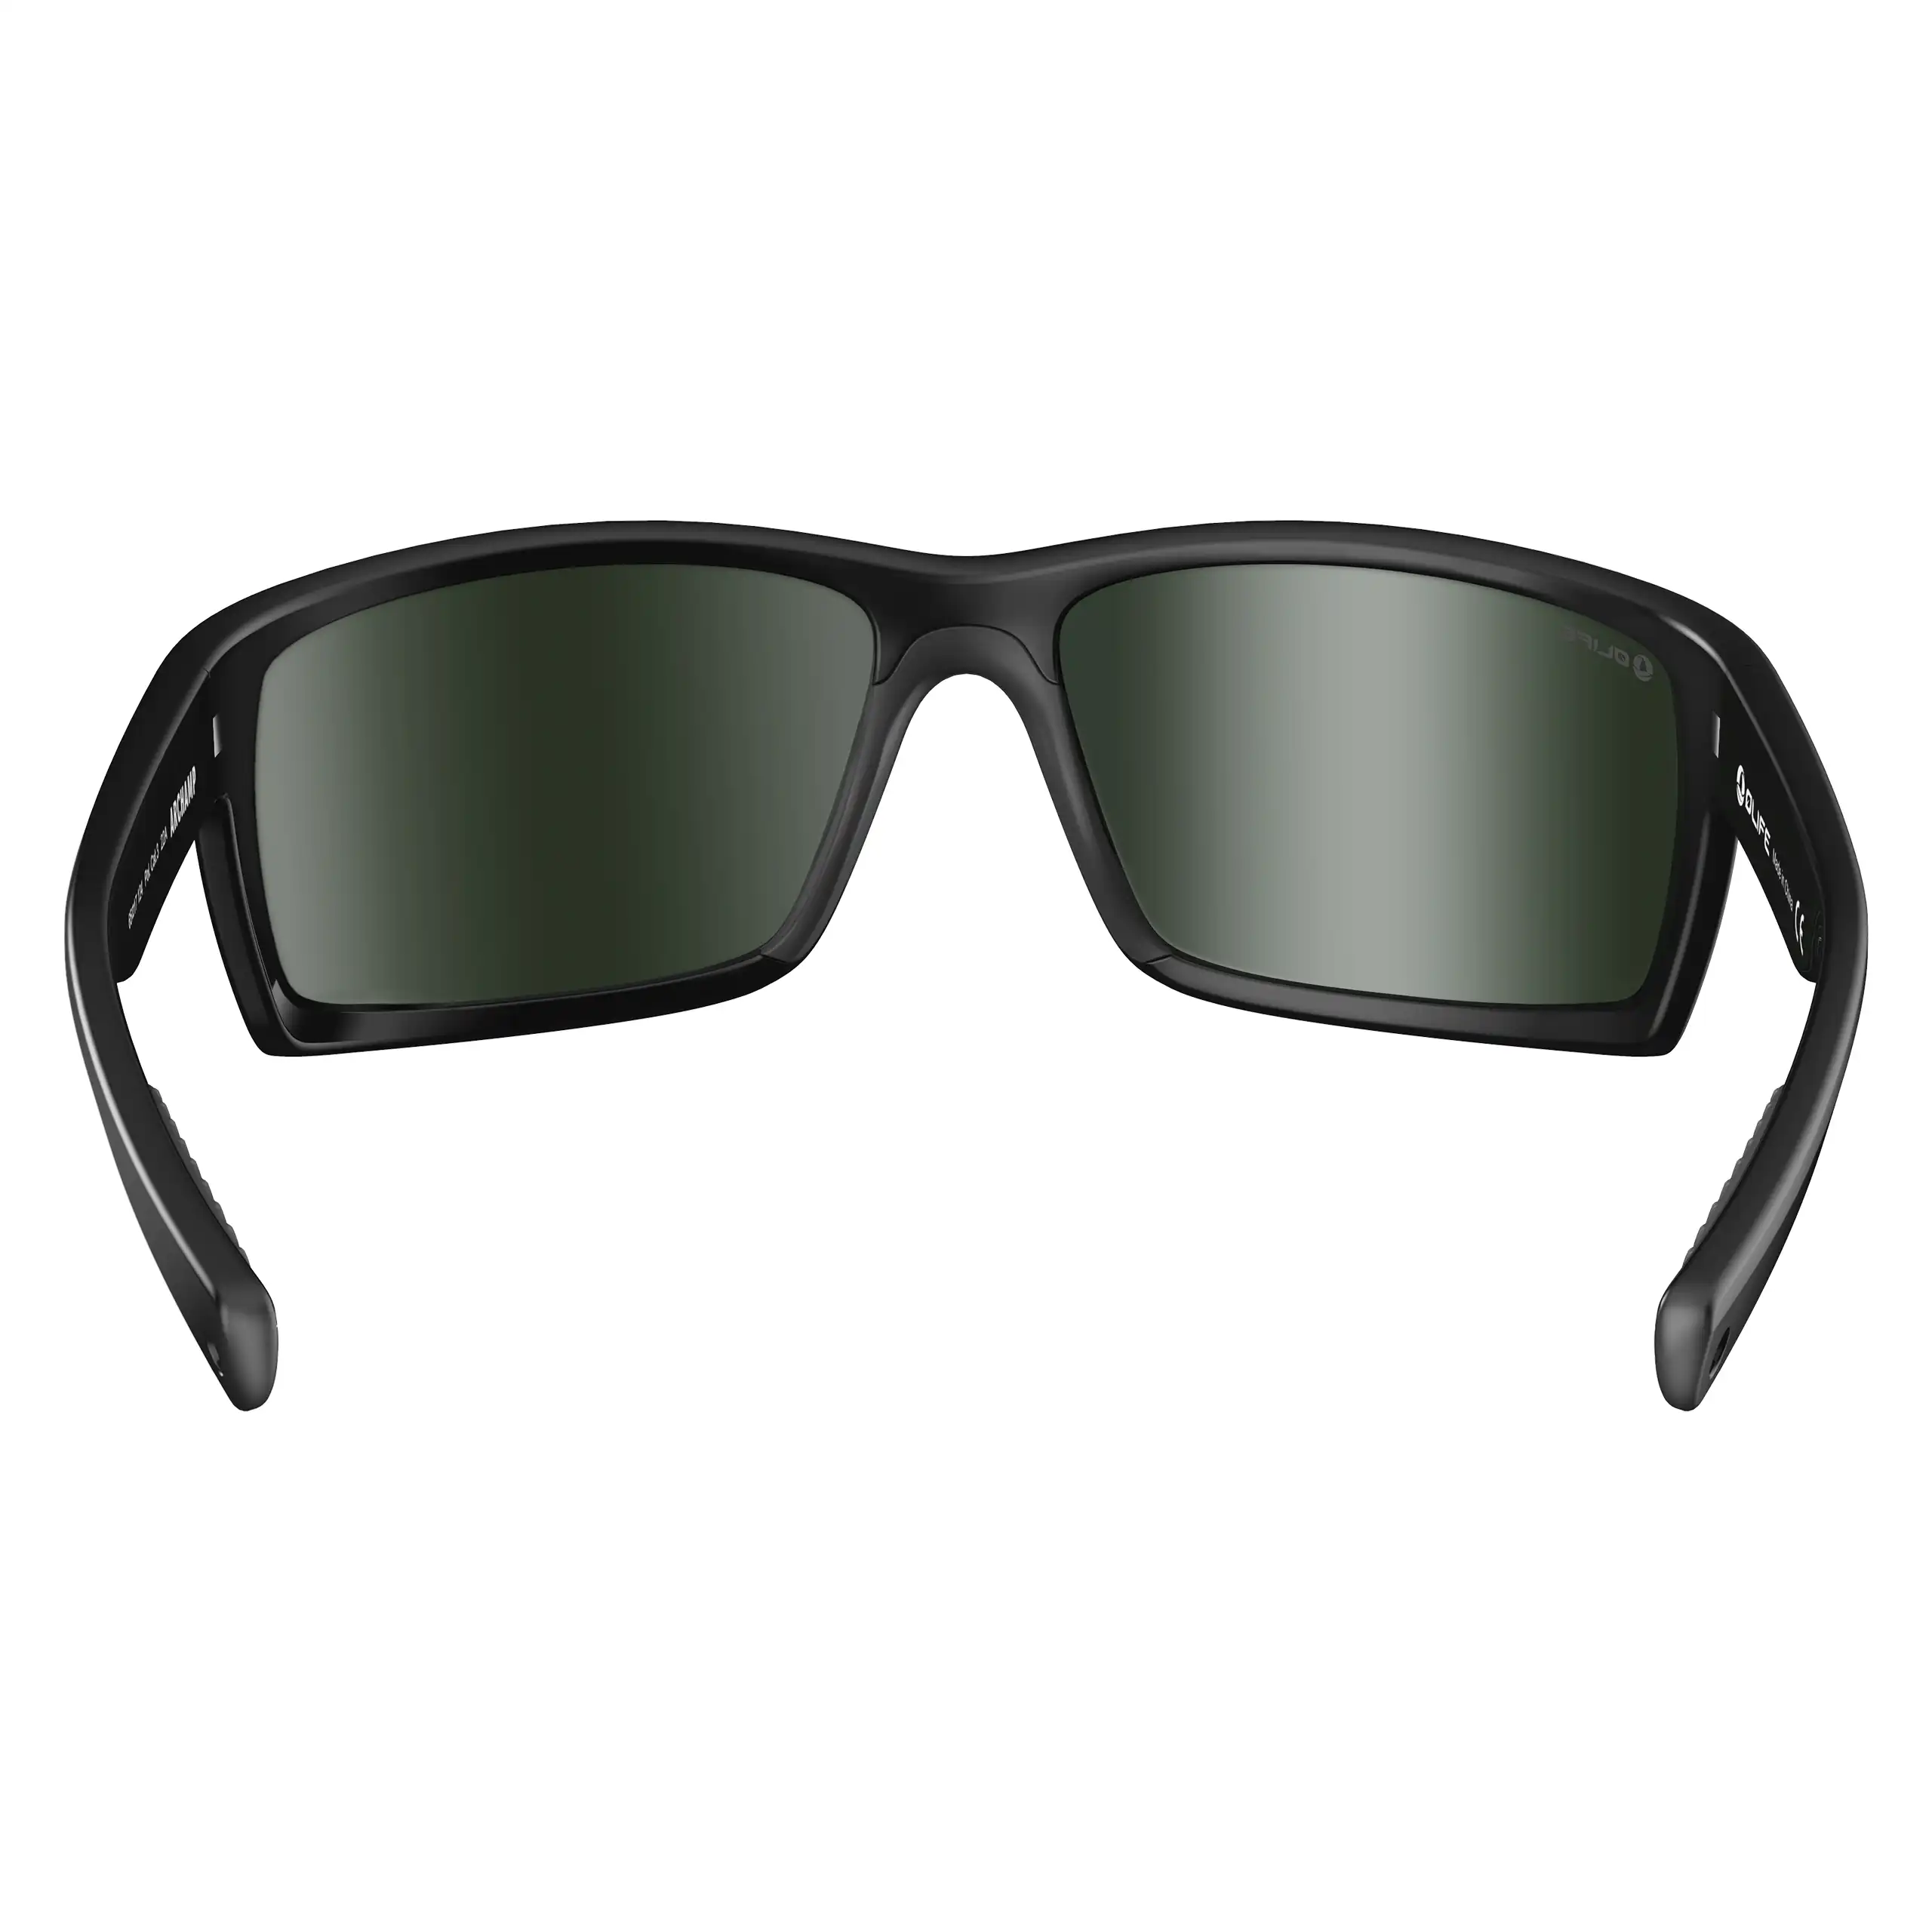 OLIFE Archamp Men's Polarized Casual Sunglasses Set